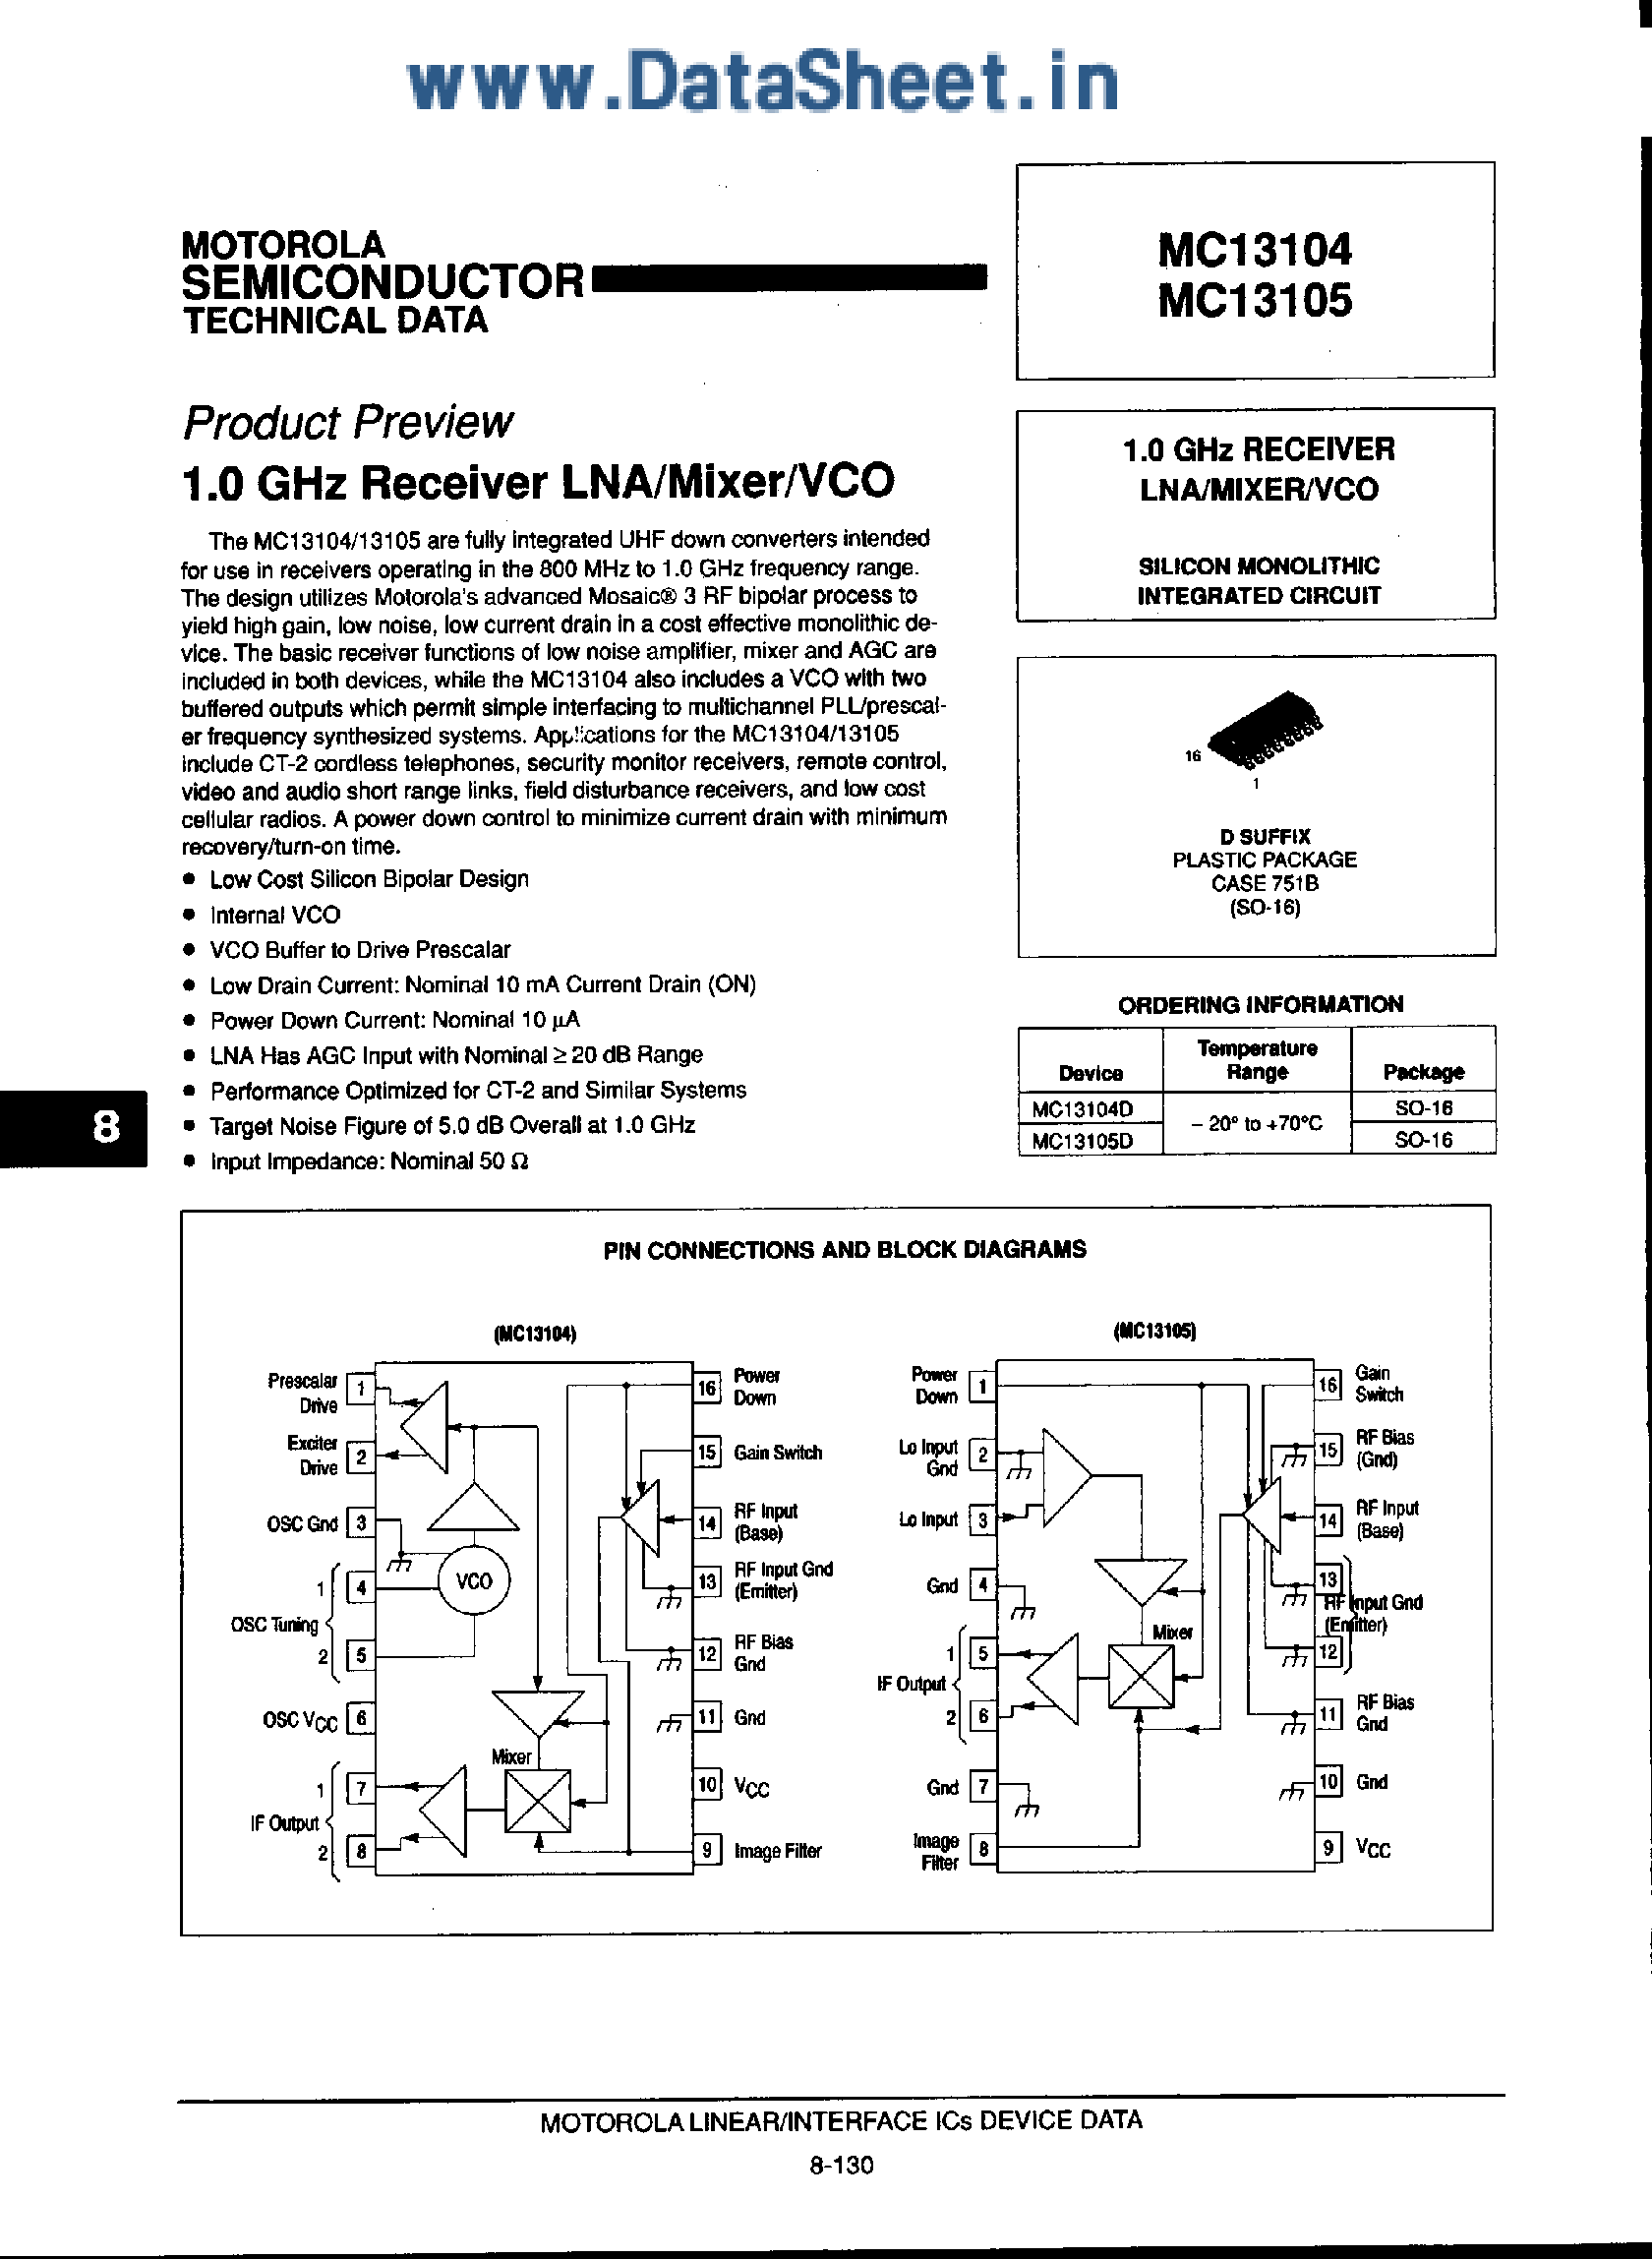 Даташит MC13104 - (MC13104 / MC13105) 1 Ghz Receiver LNA/Mixer/VCO страница 1